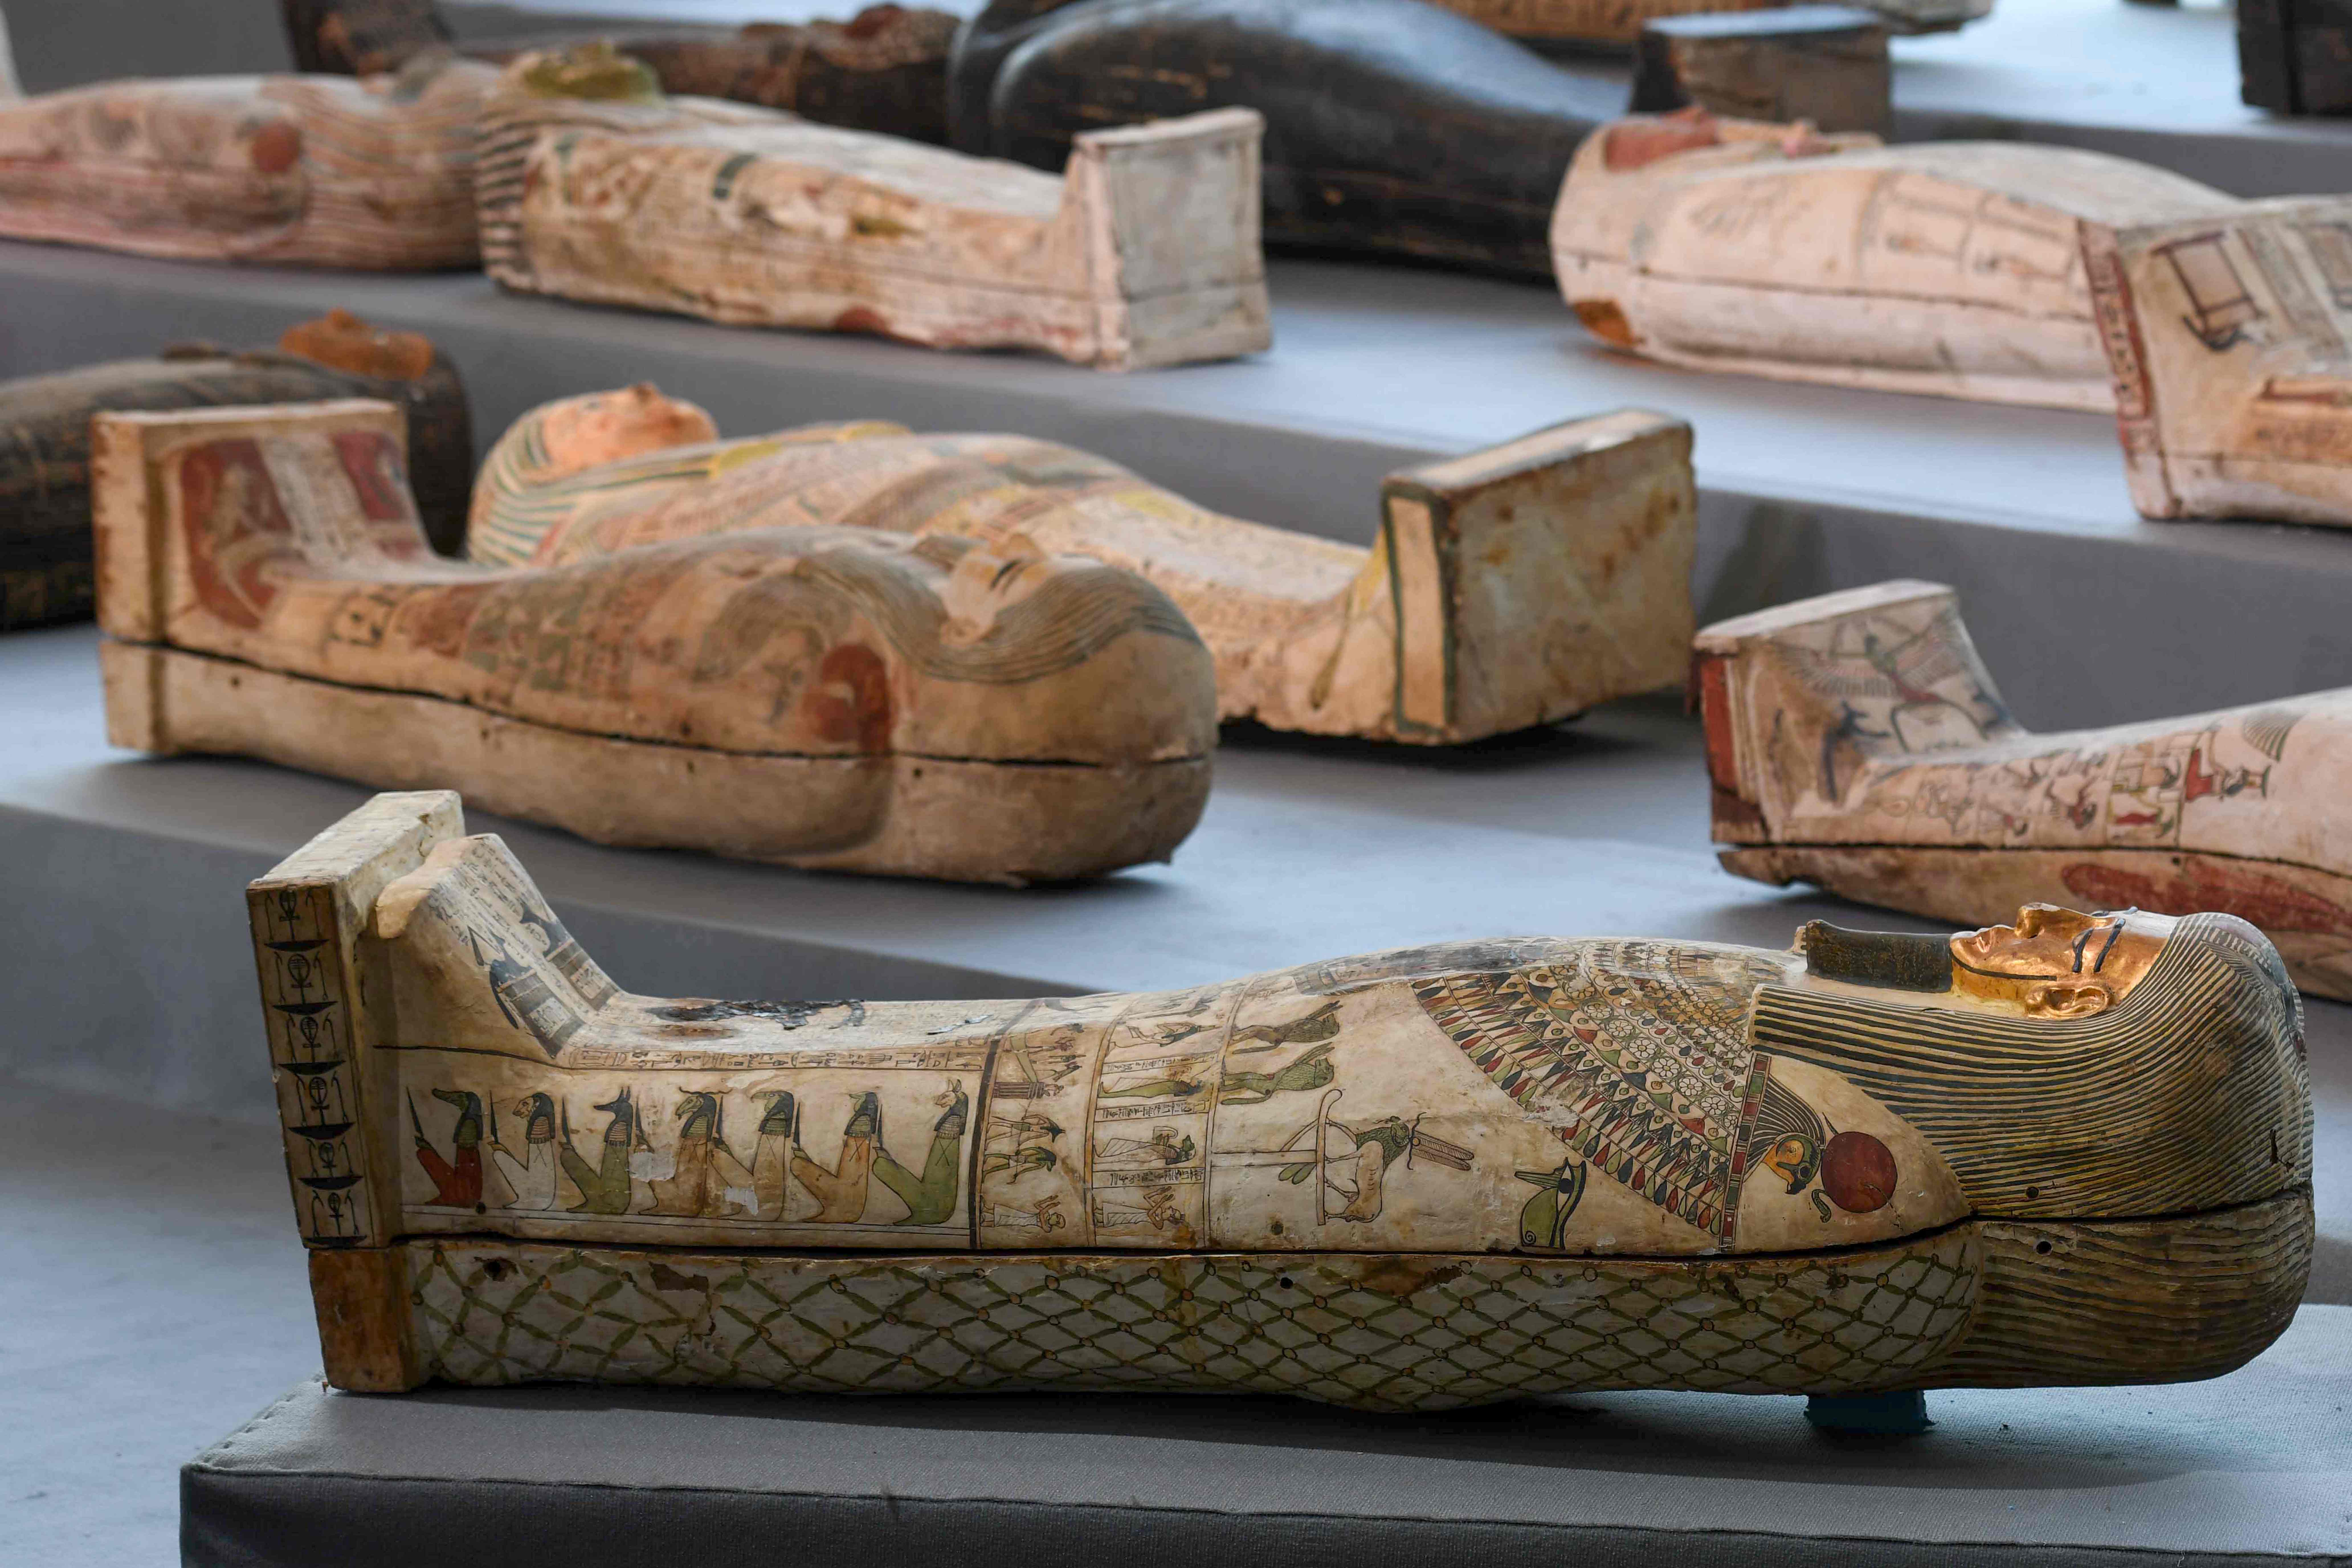 Los ataúdes de madera revelados pertenecieron a altos funcionarios del Período Tardío y el período Ptolemaico del antiguo Egipto. (Foto Prensa Libre: AFP)